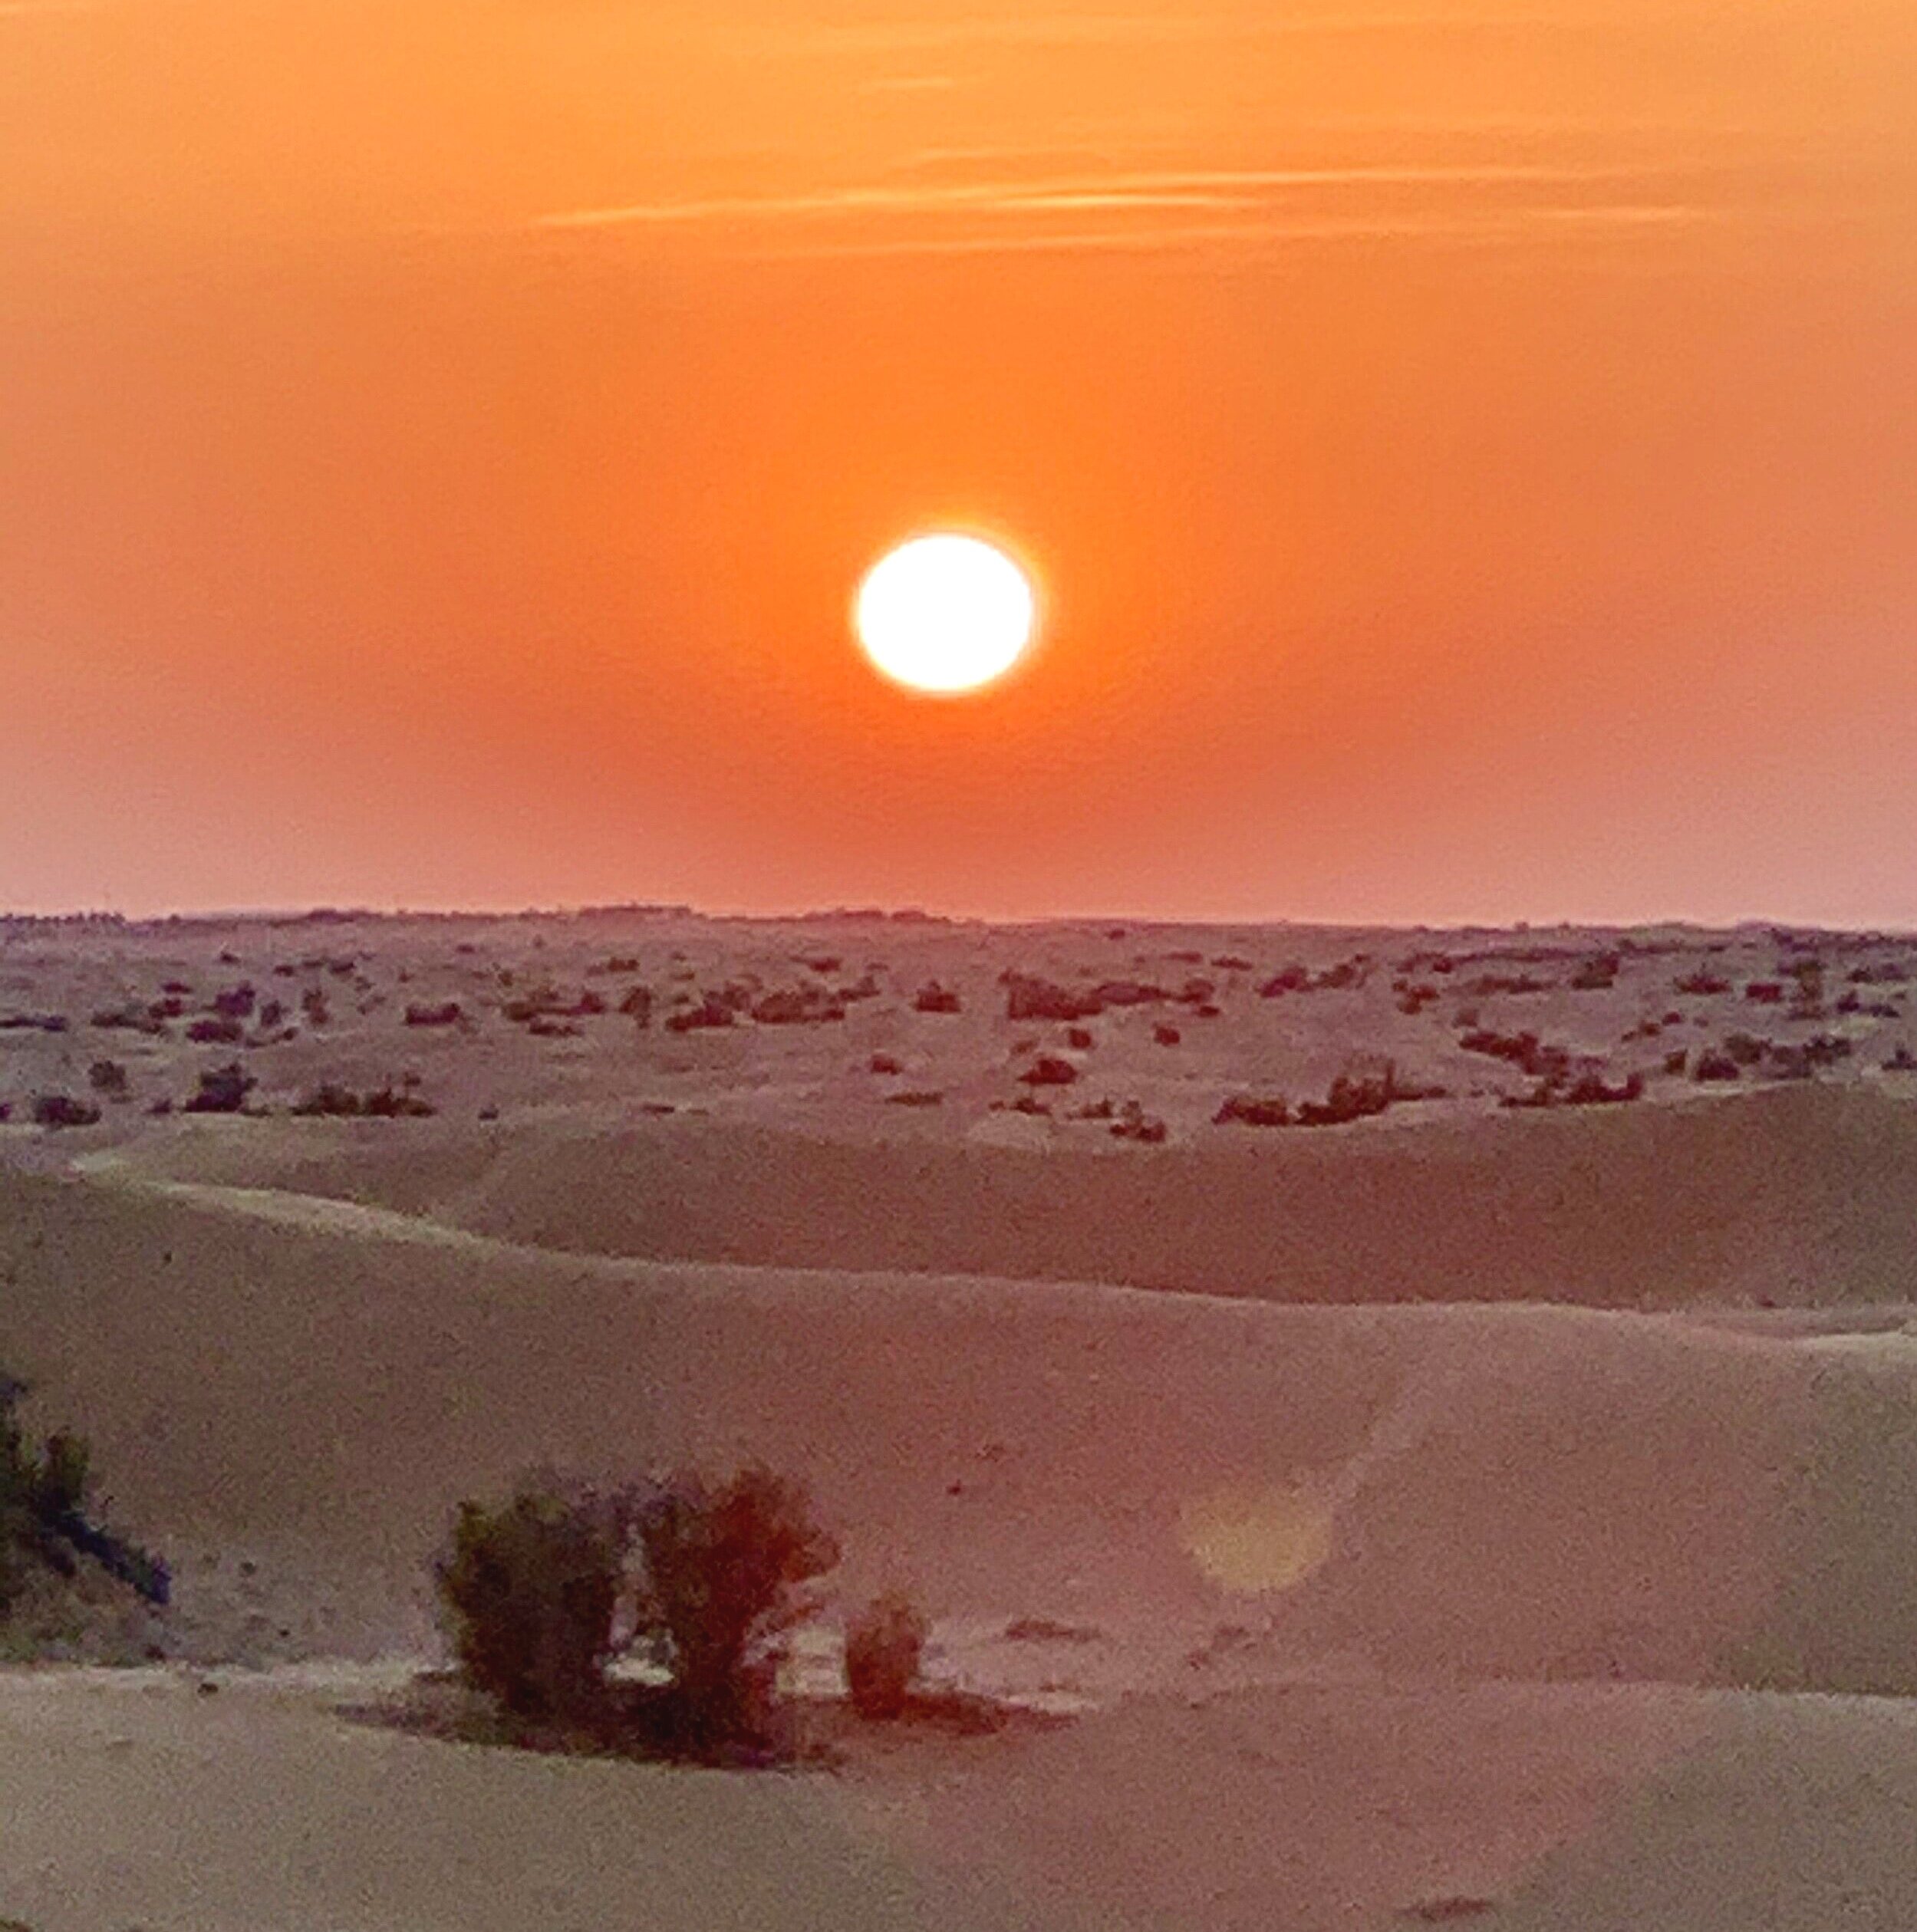 Desert sunset. 